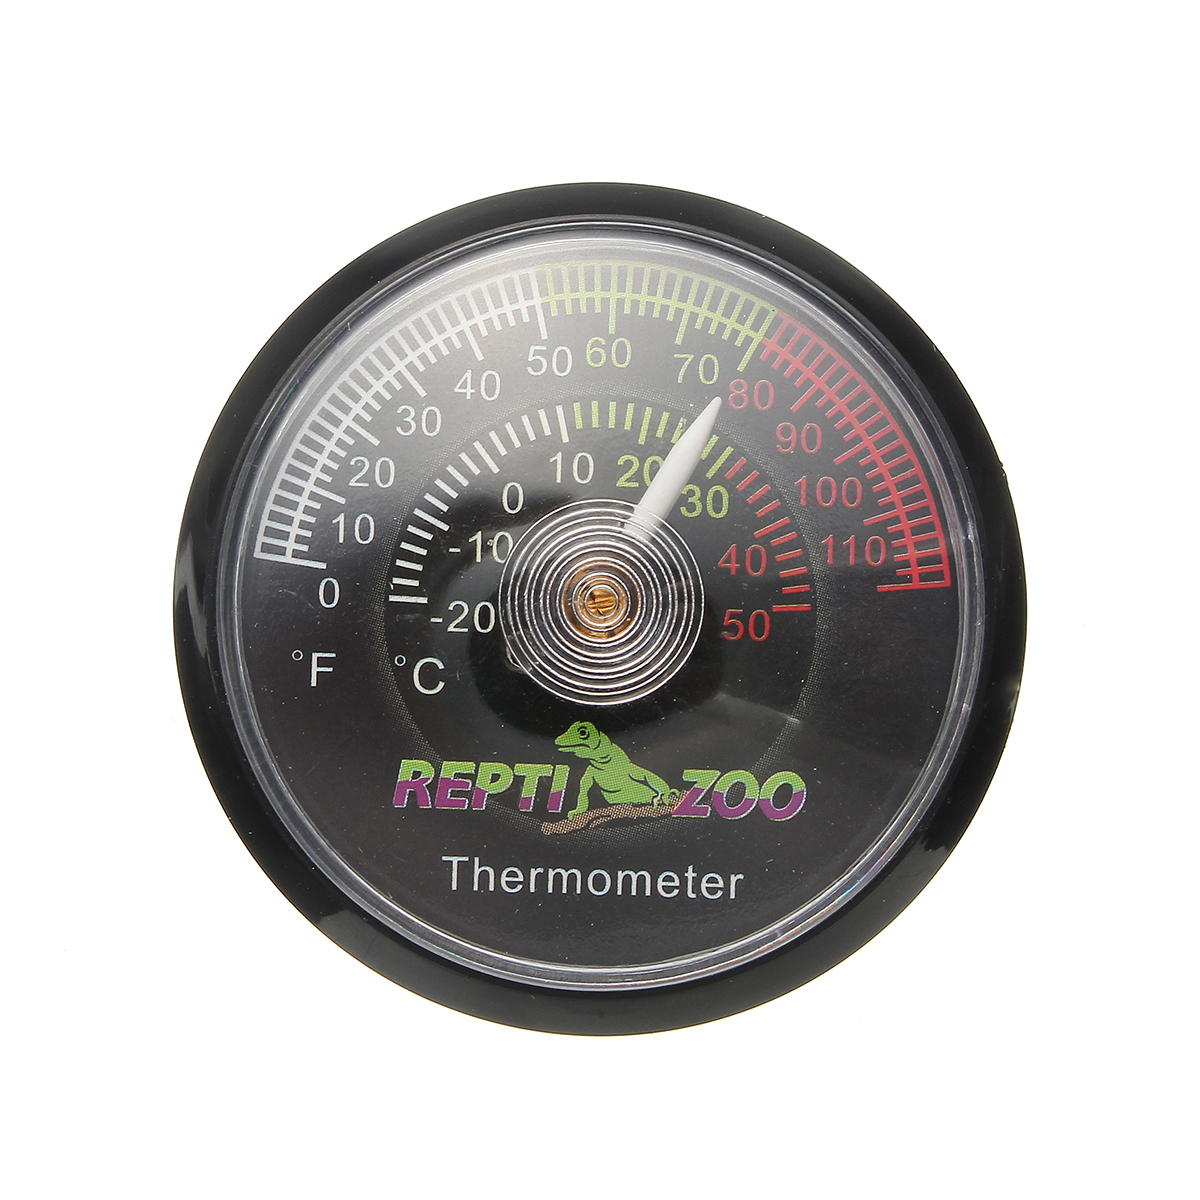 Reptile-Tortoise-Vivarium-Terrarium-Temperature-Meter-Thermometer-with-Colour-Codes-1263986-5